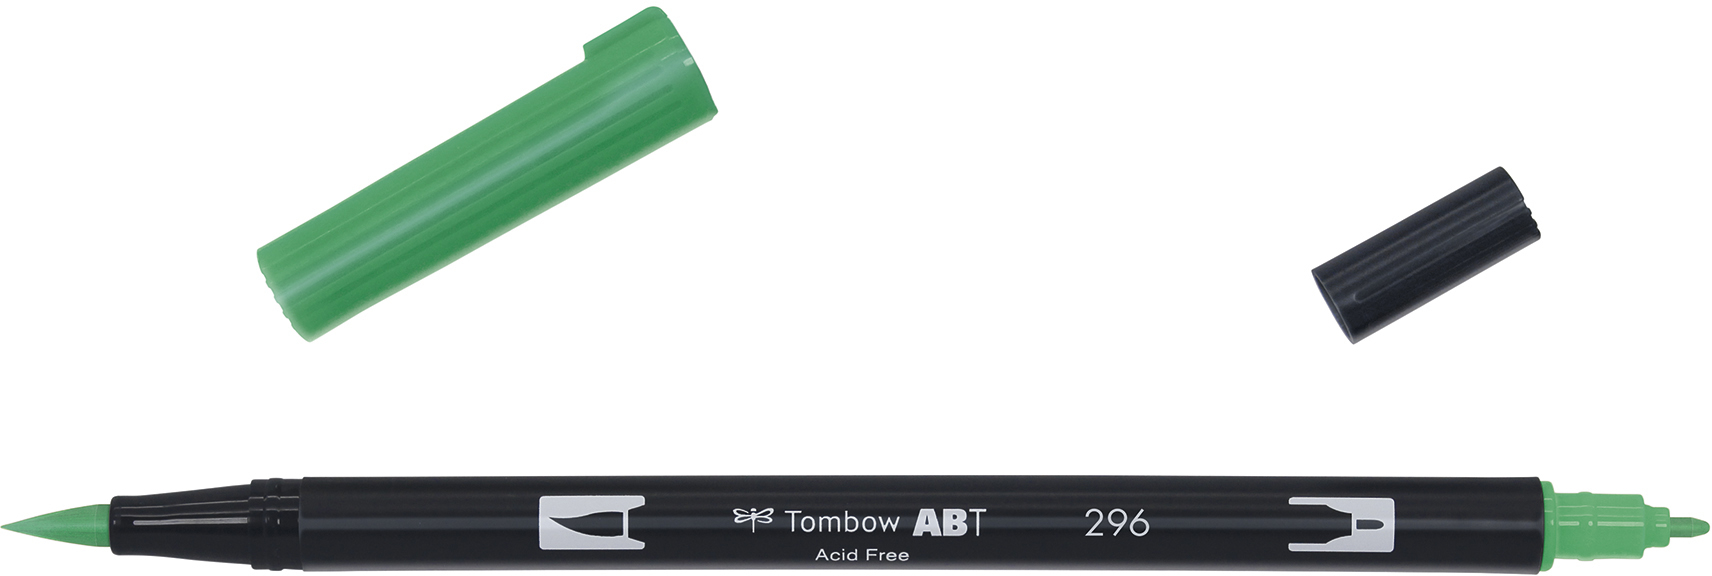 TOMBOW Dual Brush Pen ABT 296 vert vert